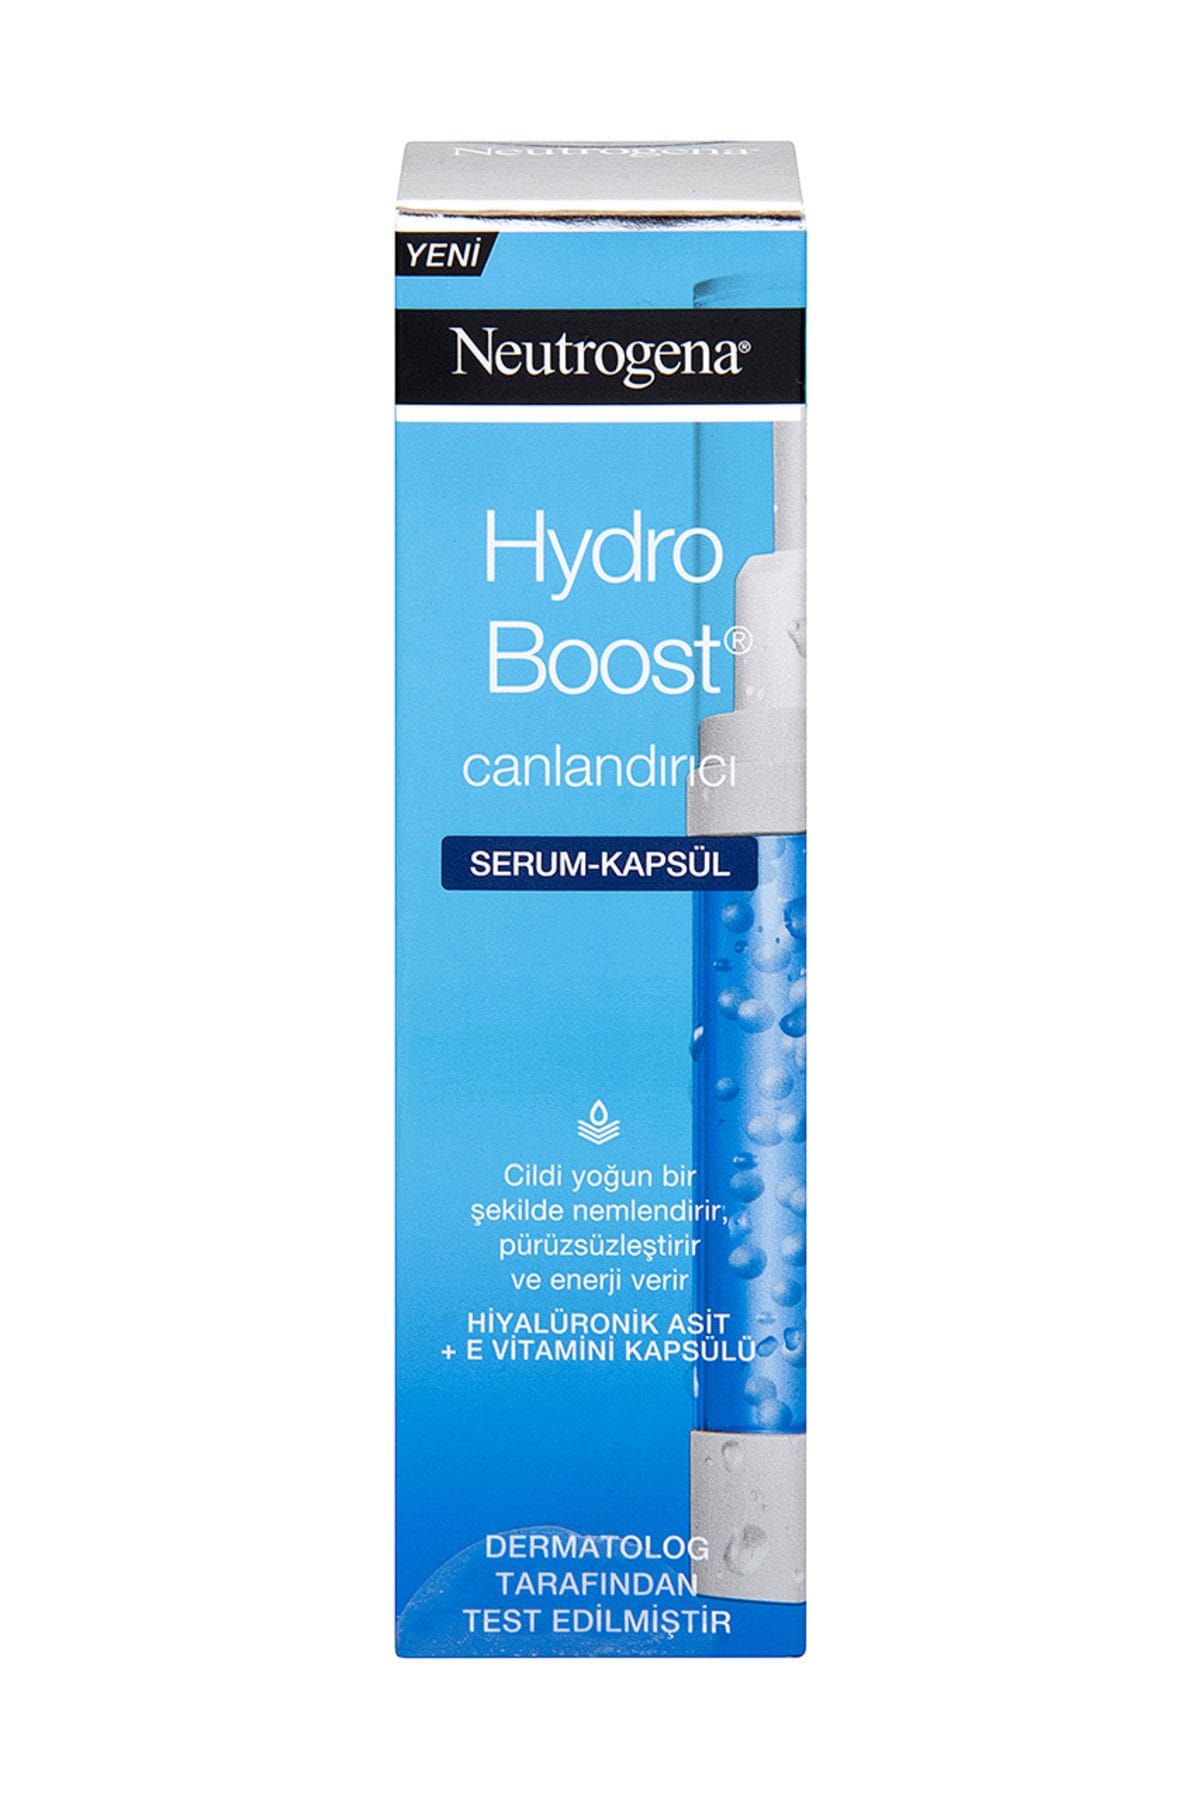 Neutrogena Hydro Boost Canlandırıcı Serum - Kapsül